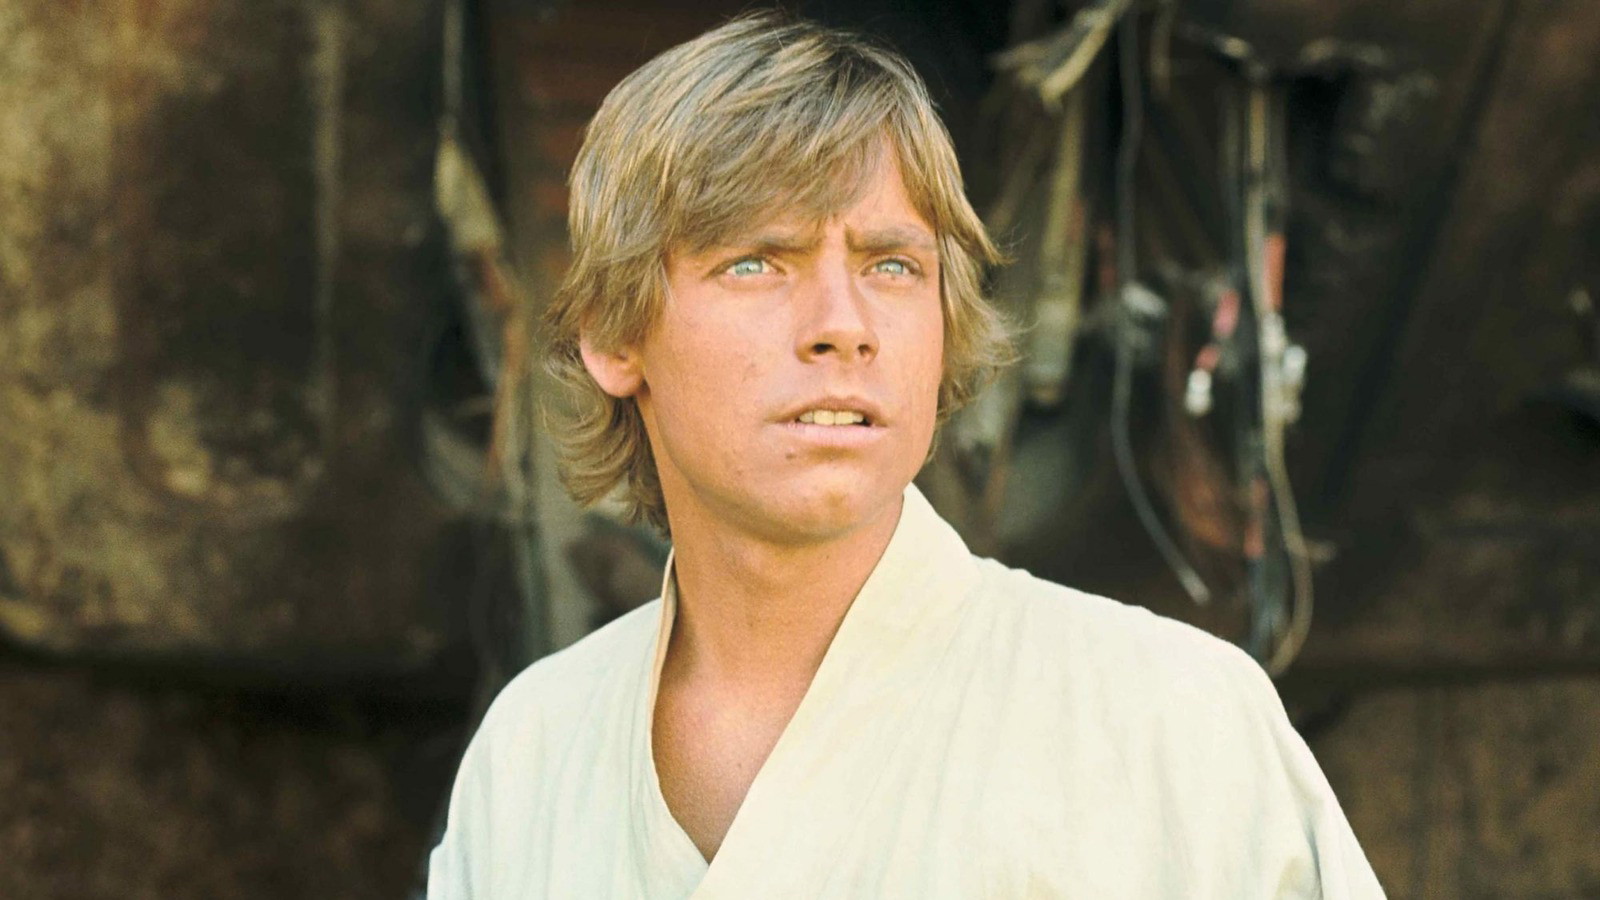 Mark Hamill in a still from Star Wars: A New Hope | Lucasfilm Ltd.